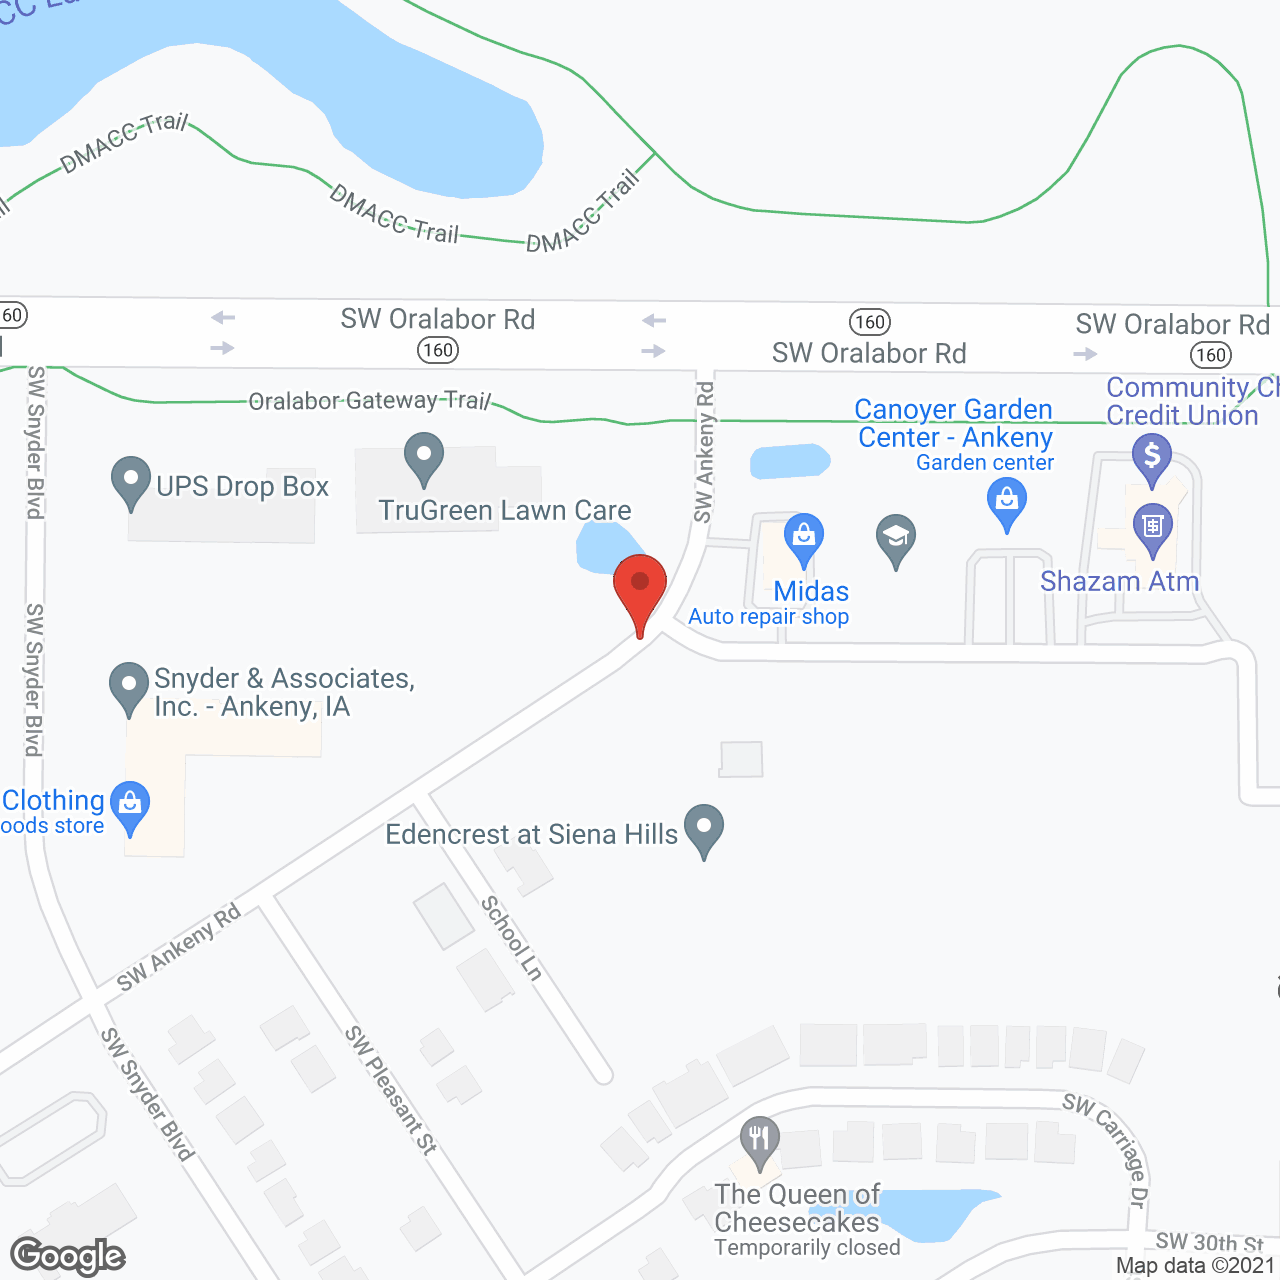 Edencrest at Siena Hills in google map